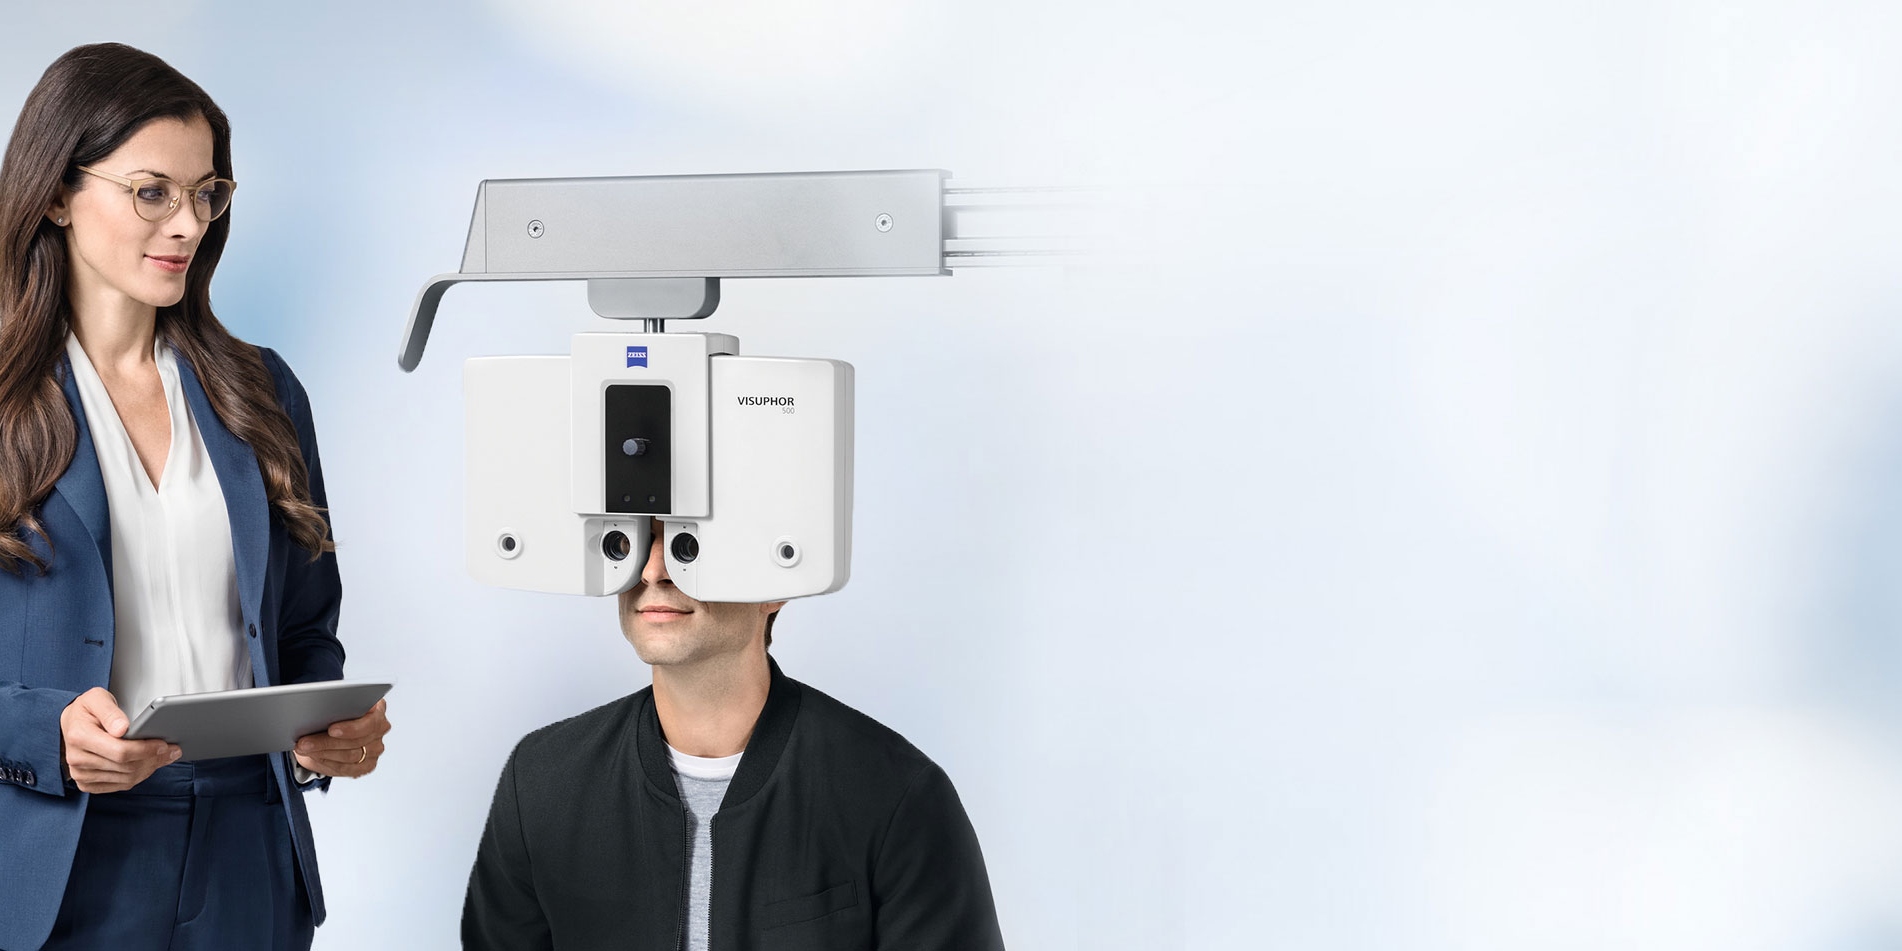 採用先進的視力檢測技術驗光，確保患者的對您的信任。